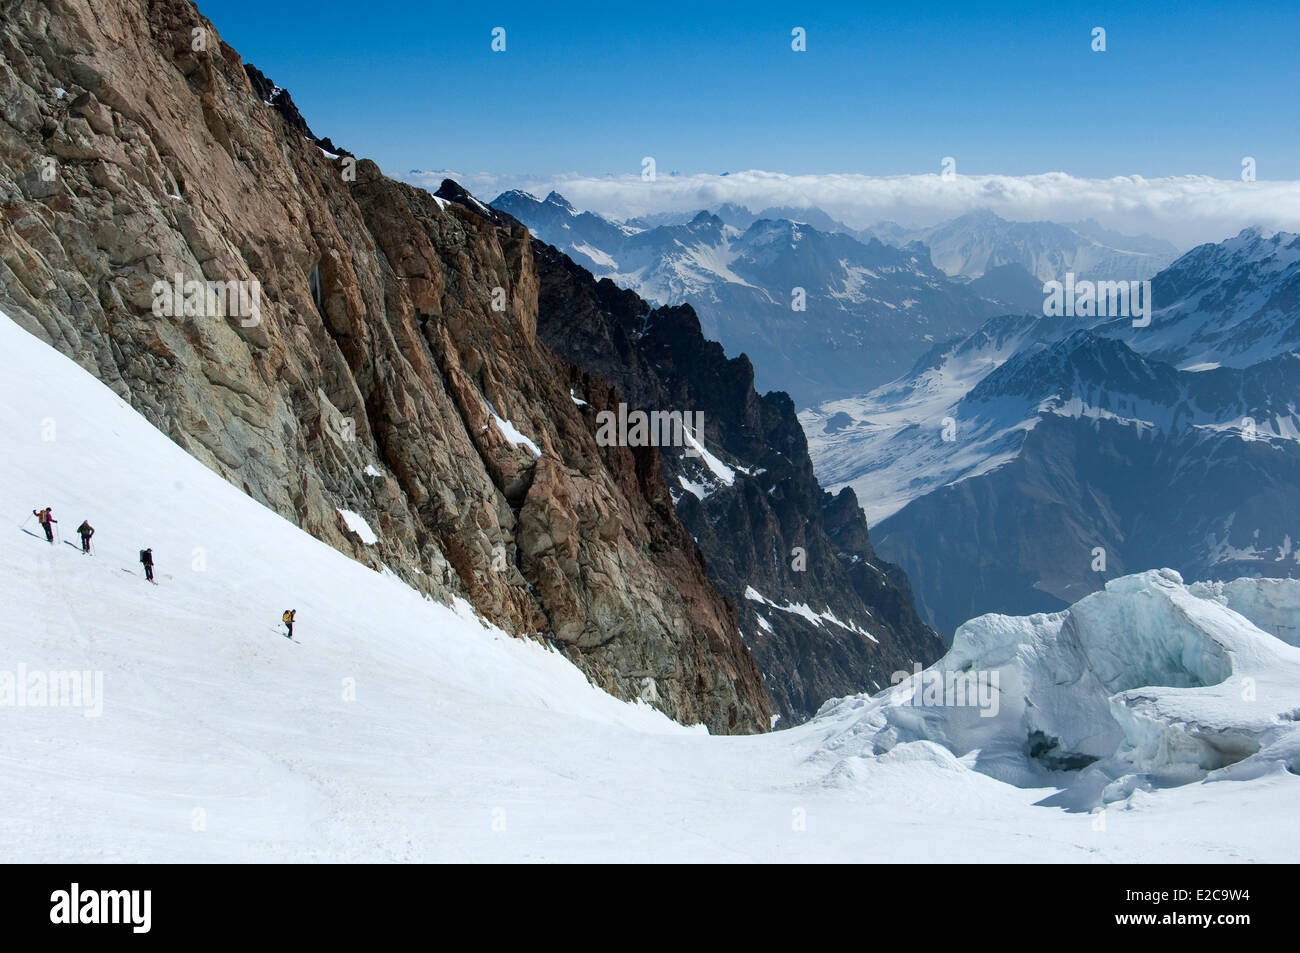 France, Hautes Alpes, Tour de la Meije, descent towards Le Pied du Col and Parc National des Ecrins, La Grave through the Glacier de l'Homme Stock Photo